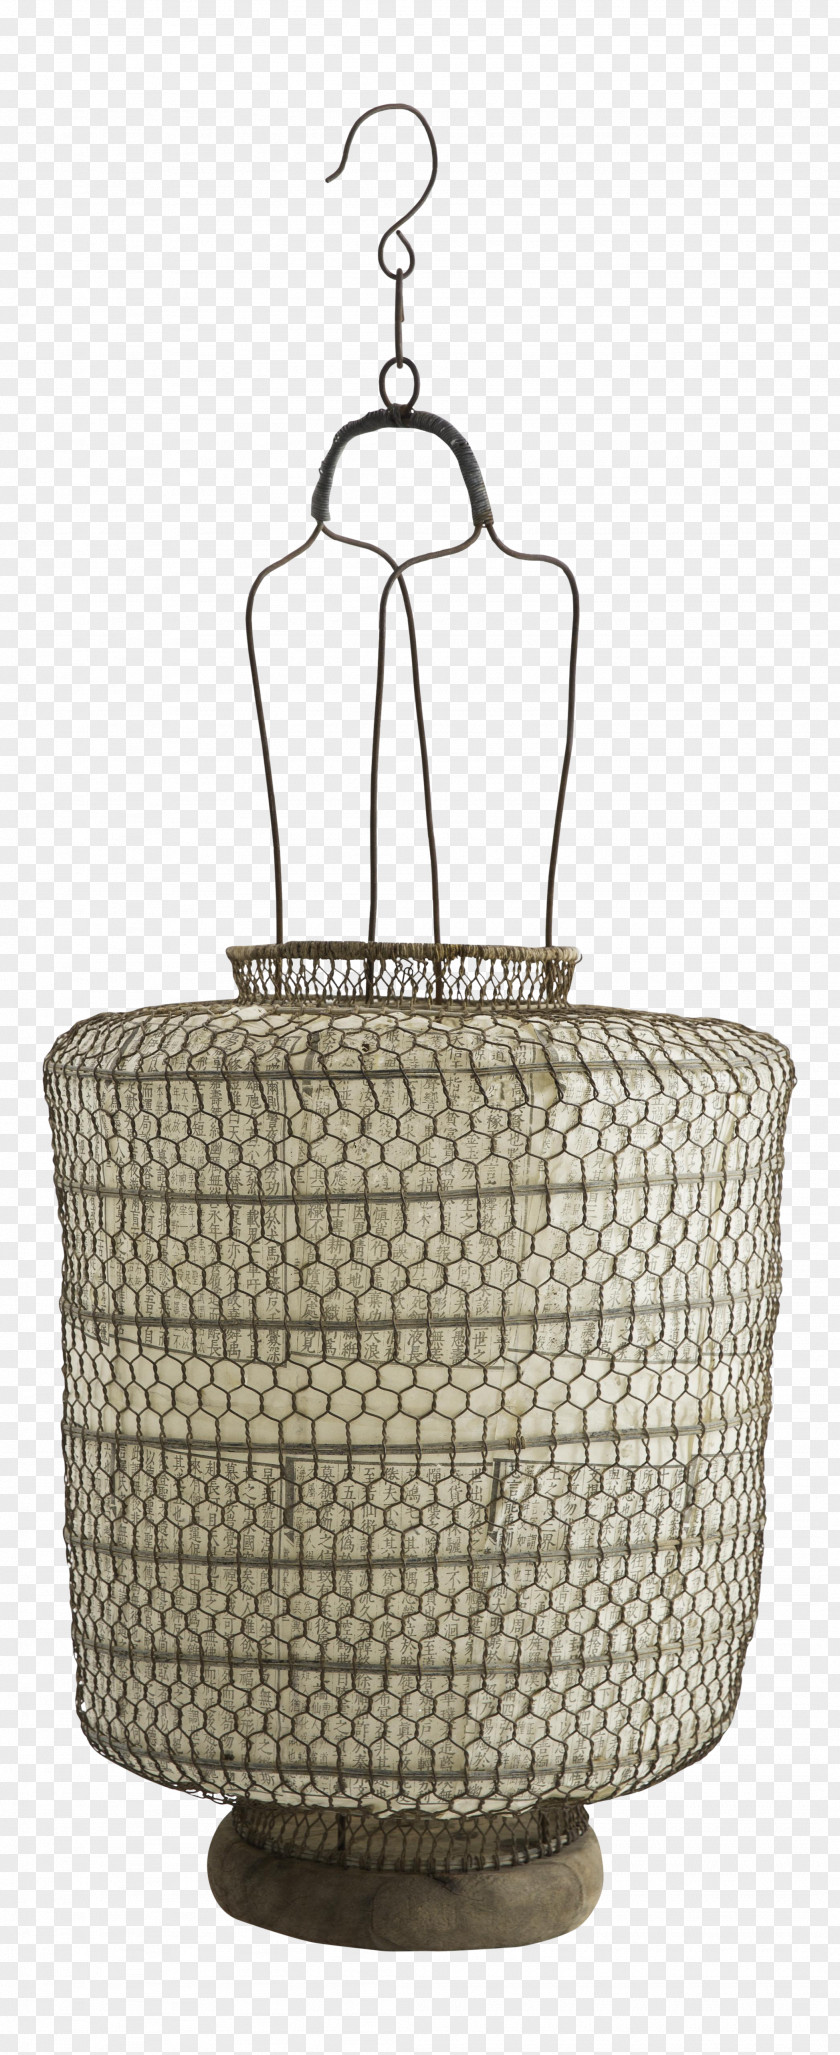 Chinese Lanterns Basket PNG